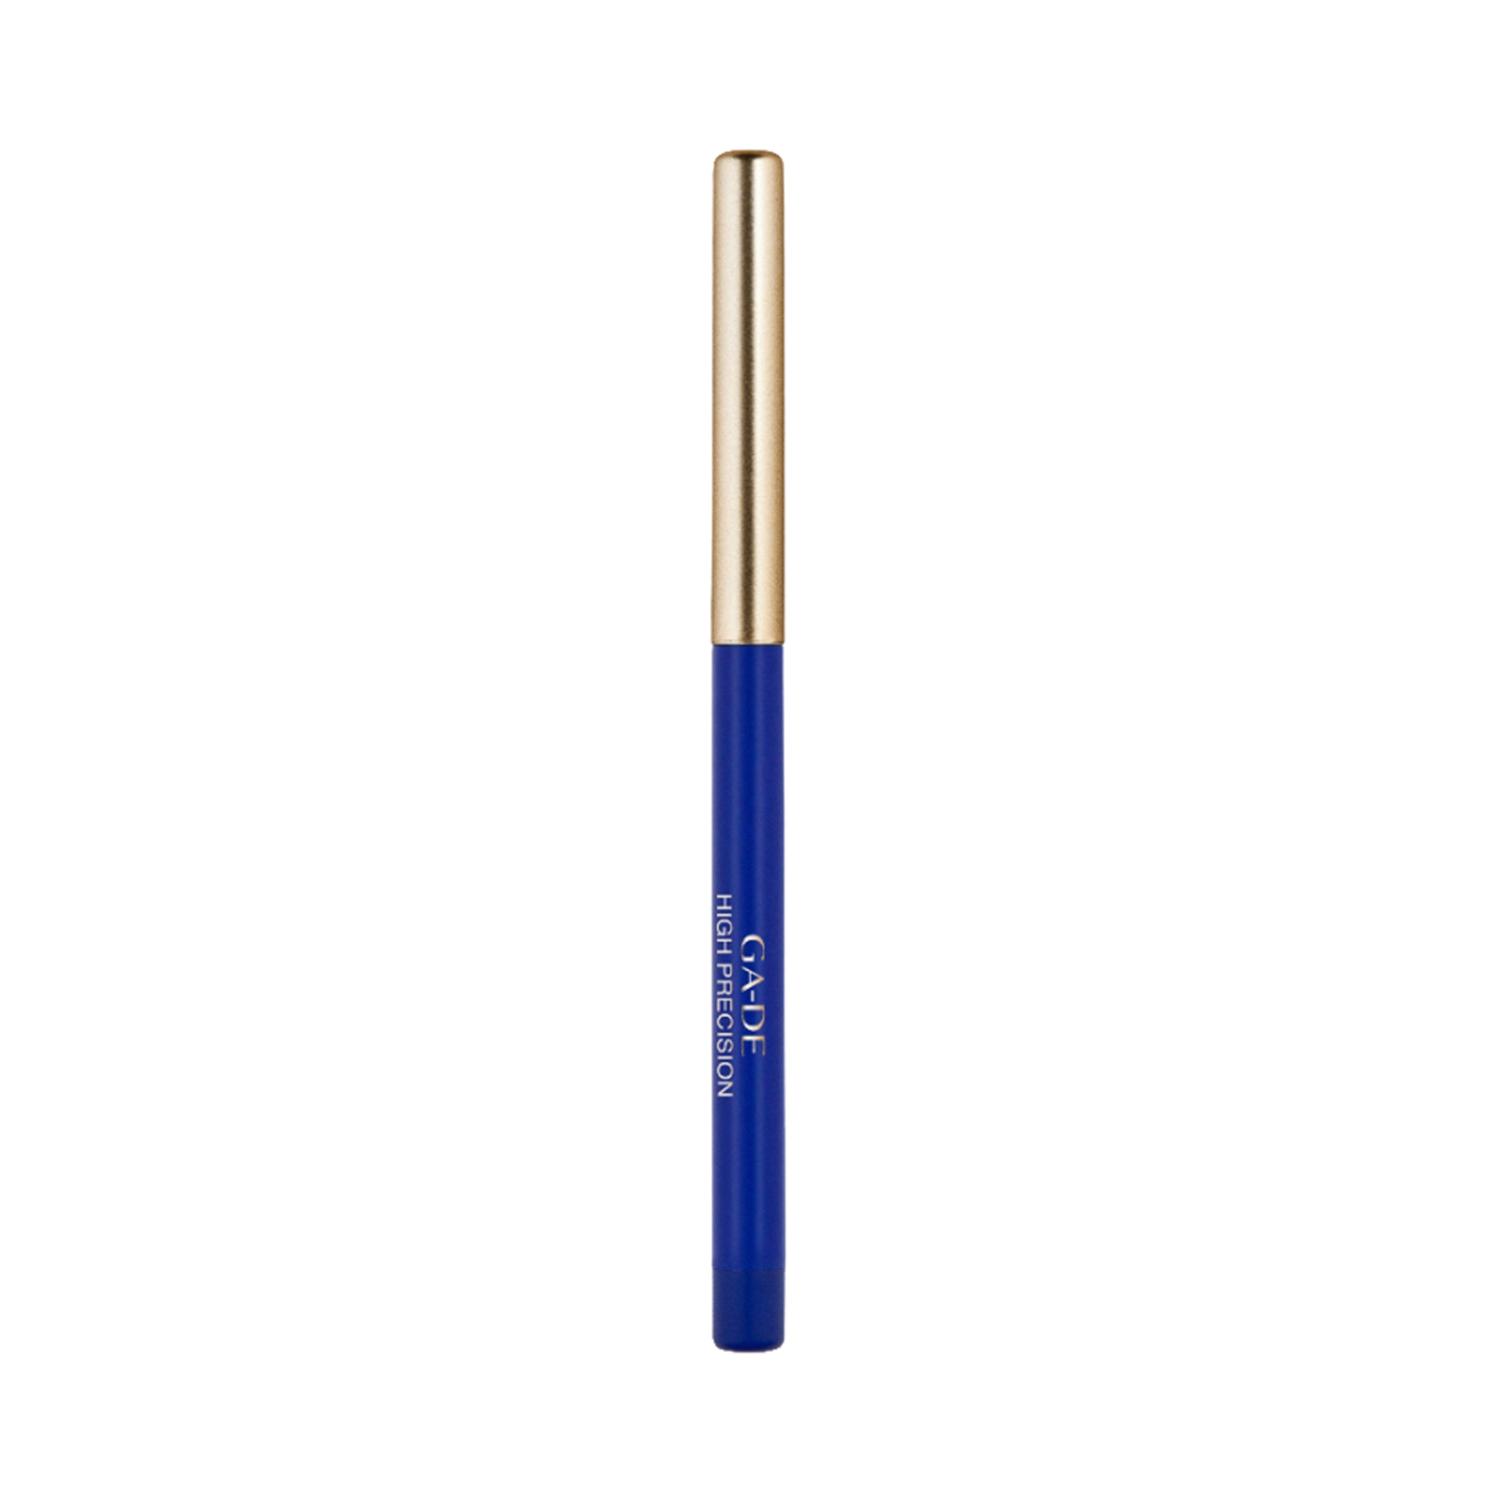 GA-DE High Precision Eye Pencil - 07 Blue (0.28g)